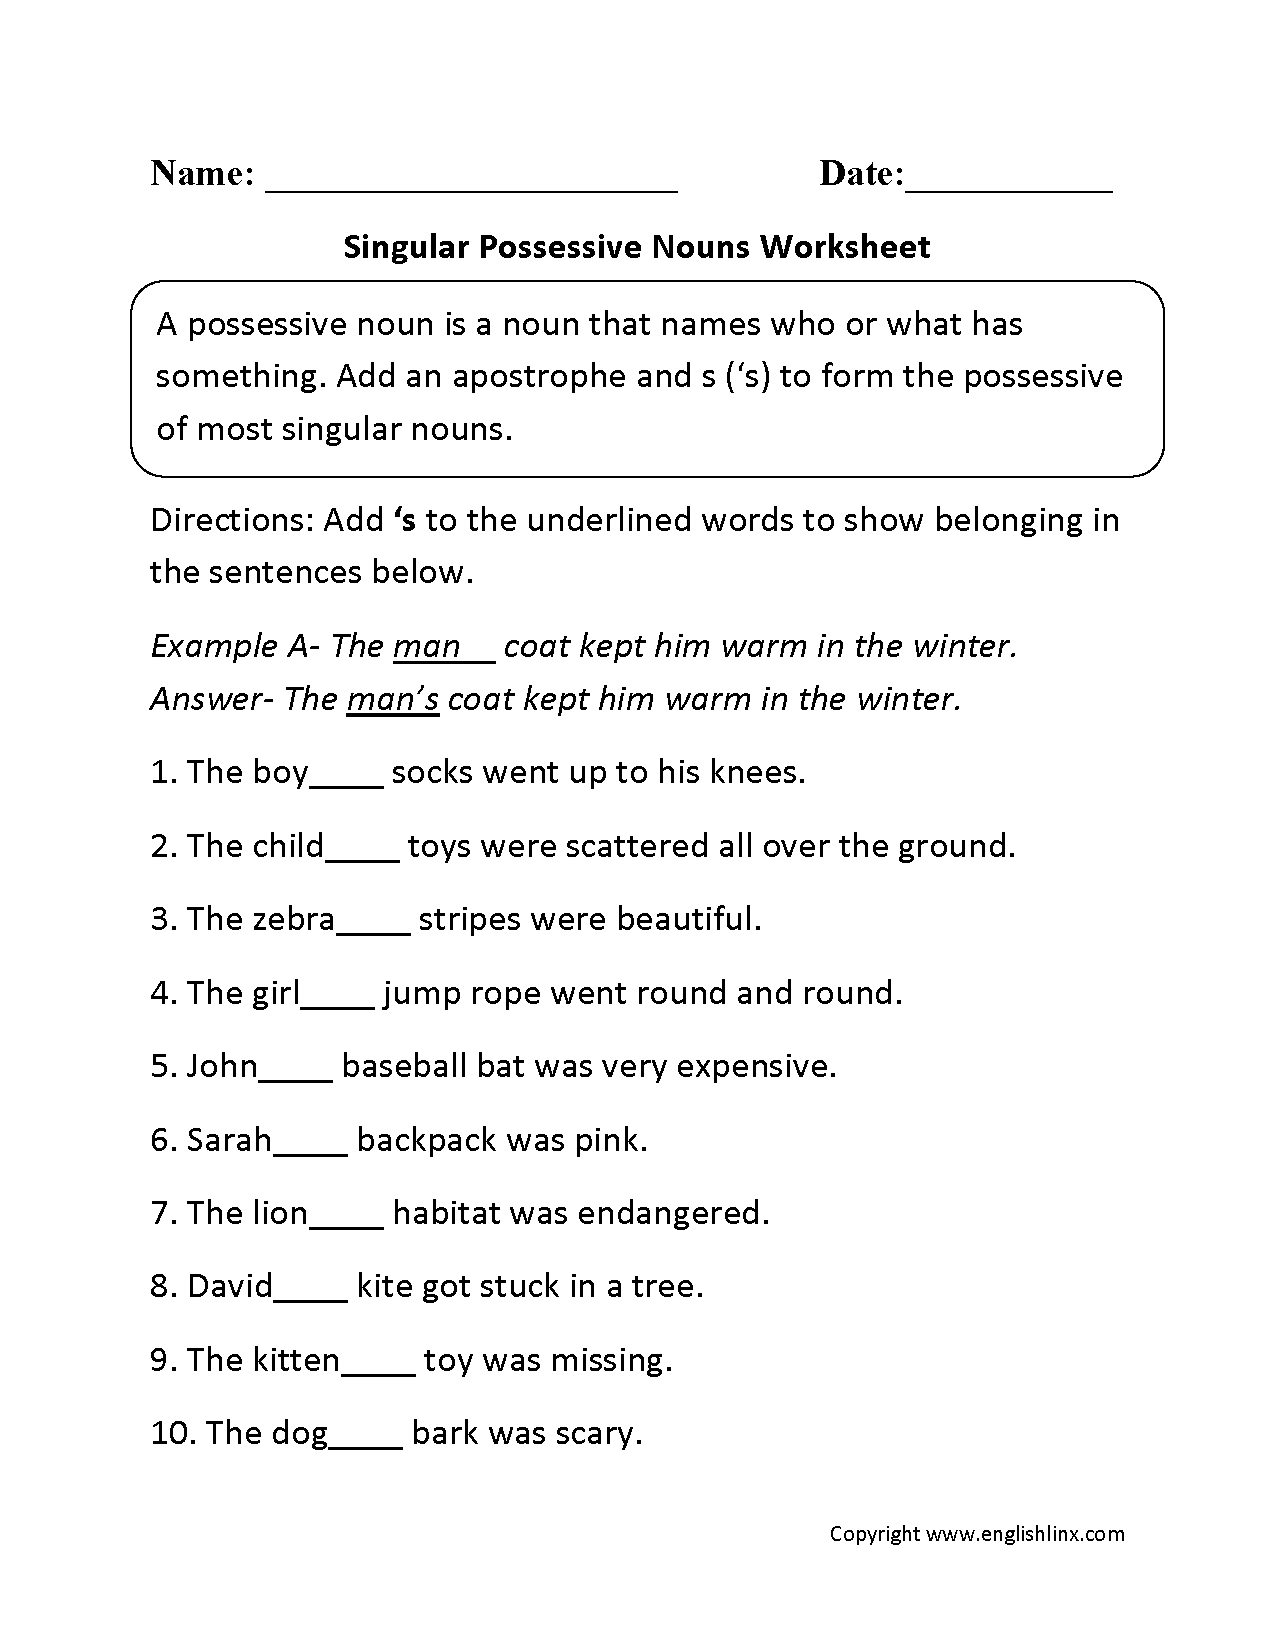 Singular Possessive Nouns Worksheets